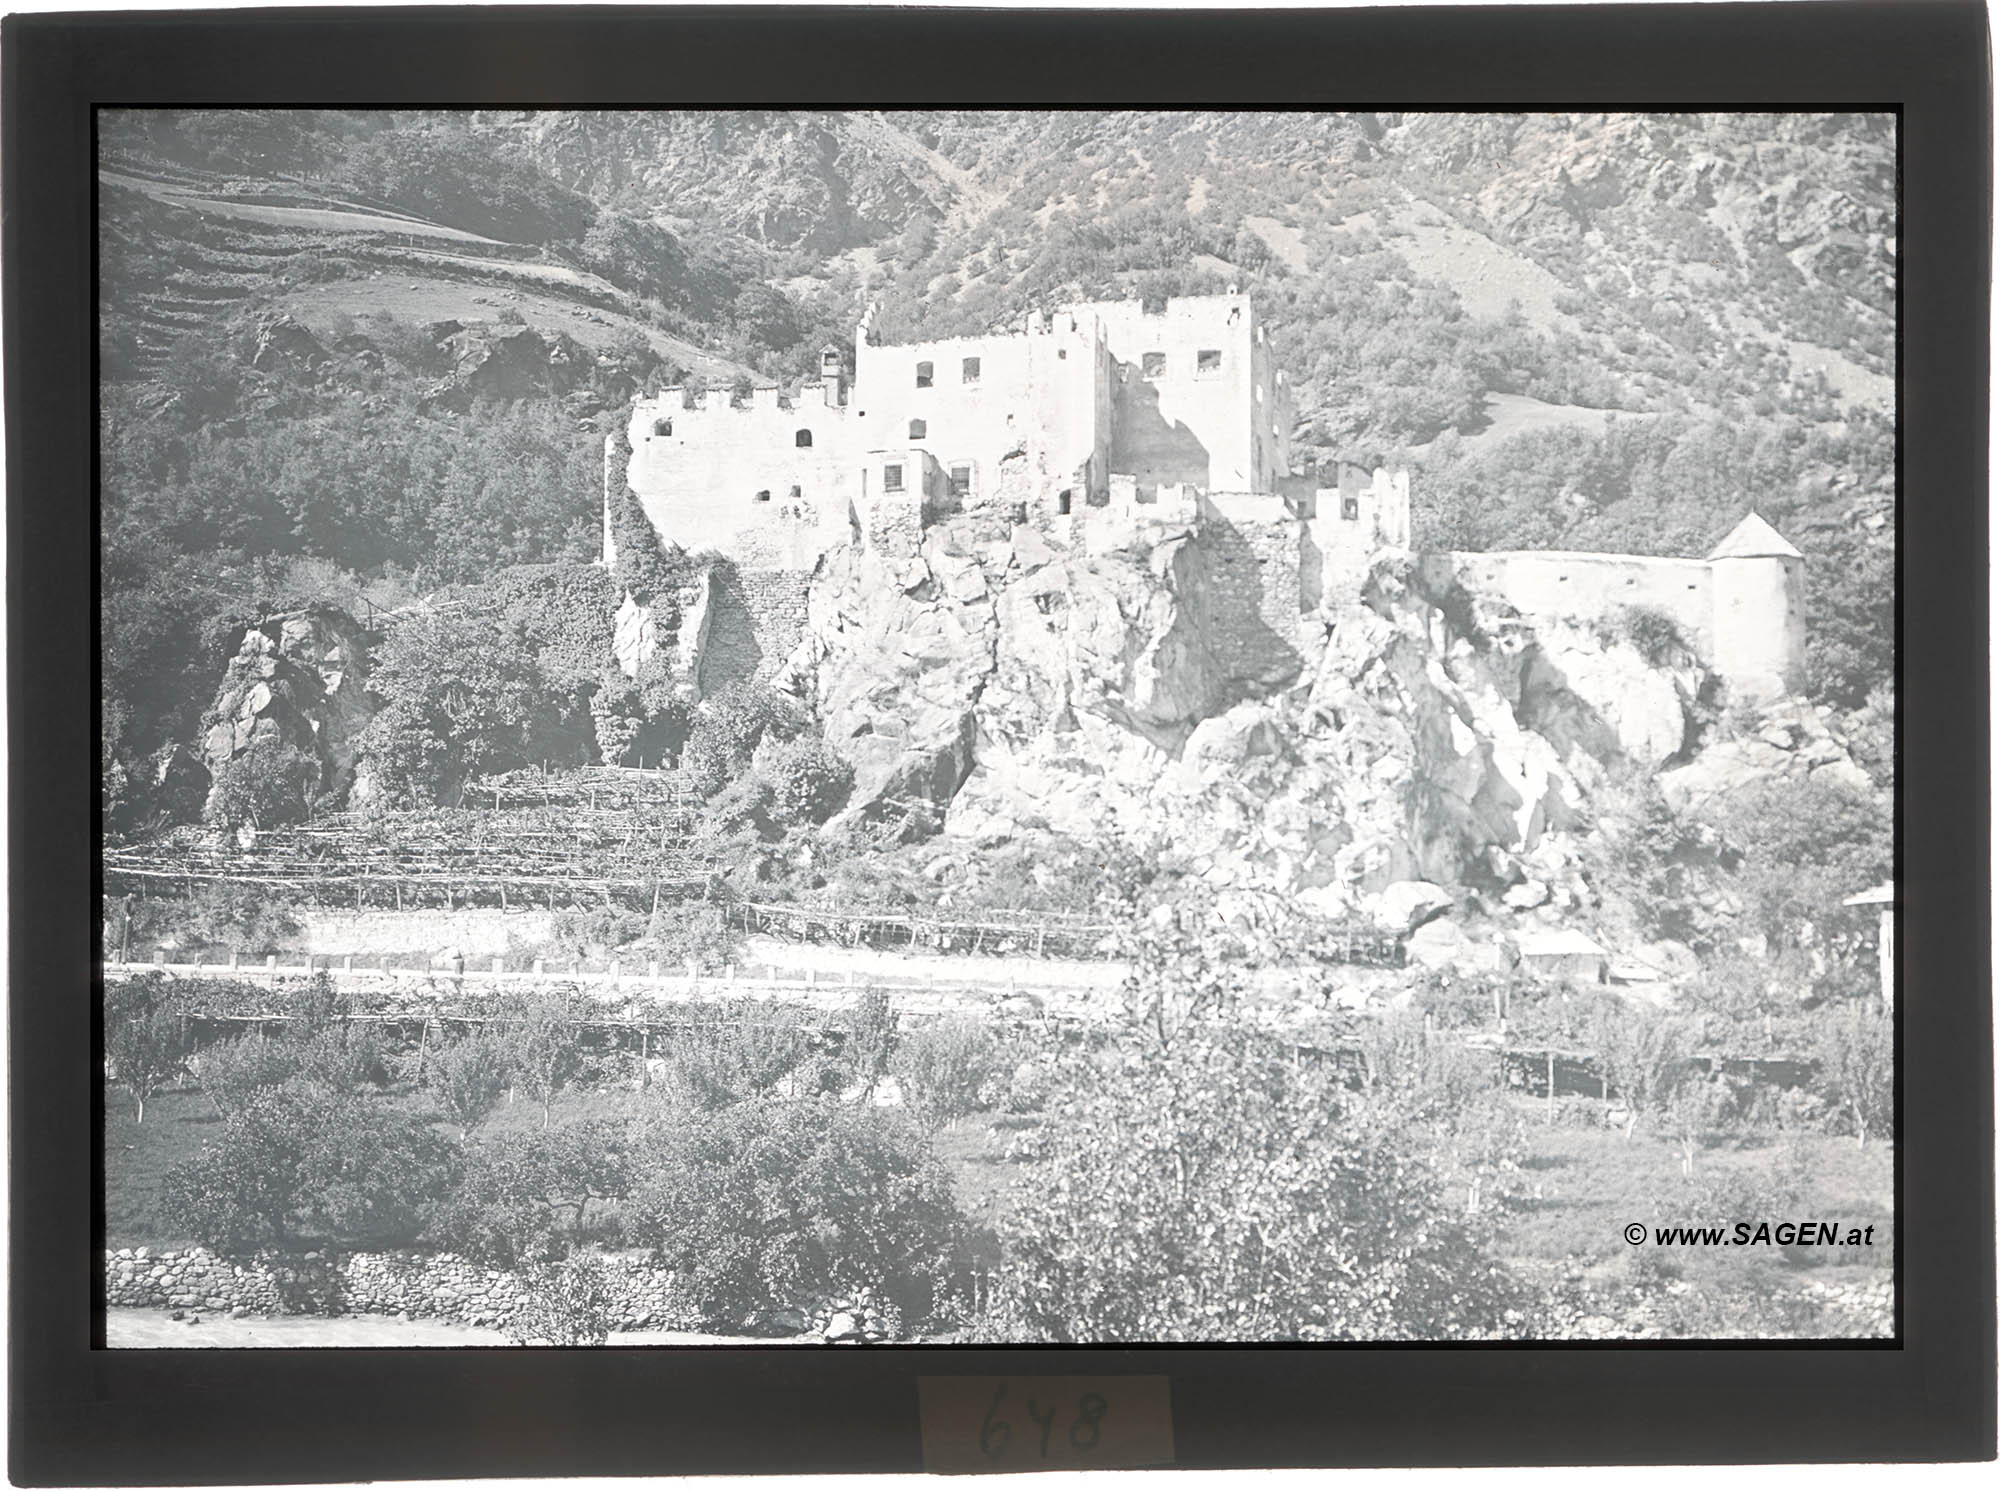 Ruine Kastelbell - Glasdia schwarz-weiß frühes 20. Jahrhundert